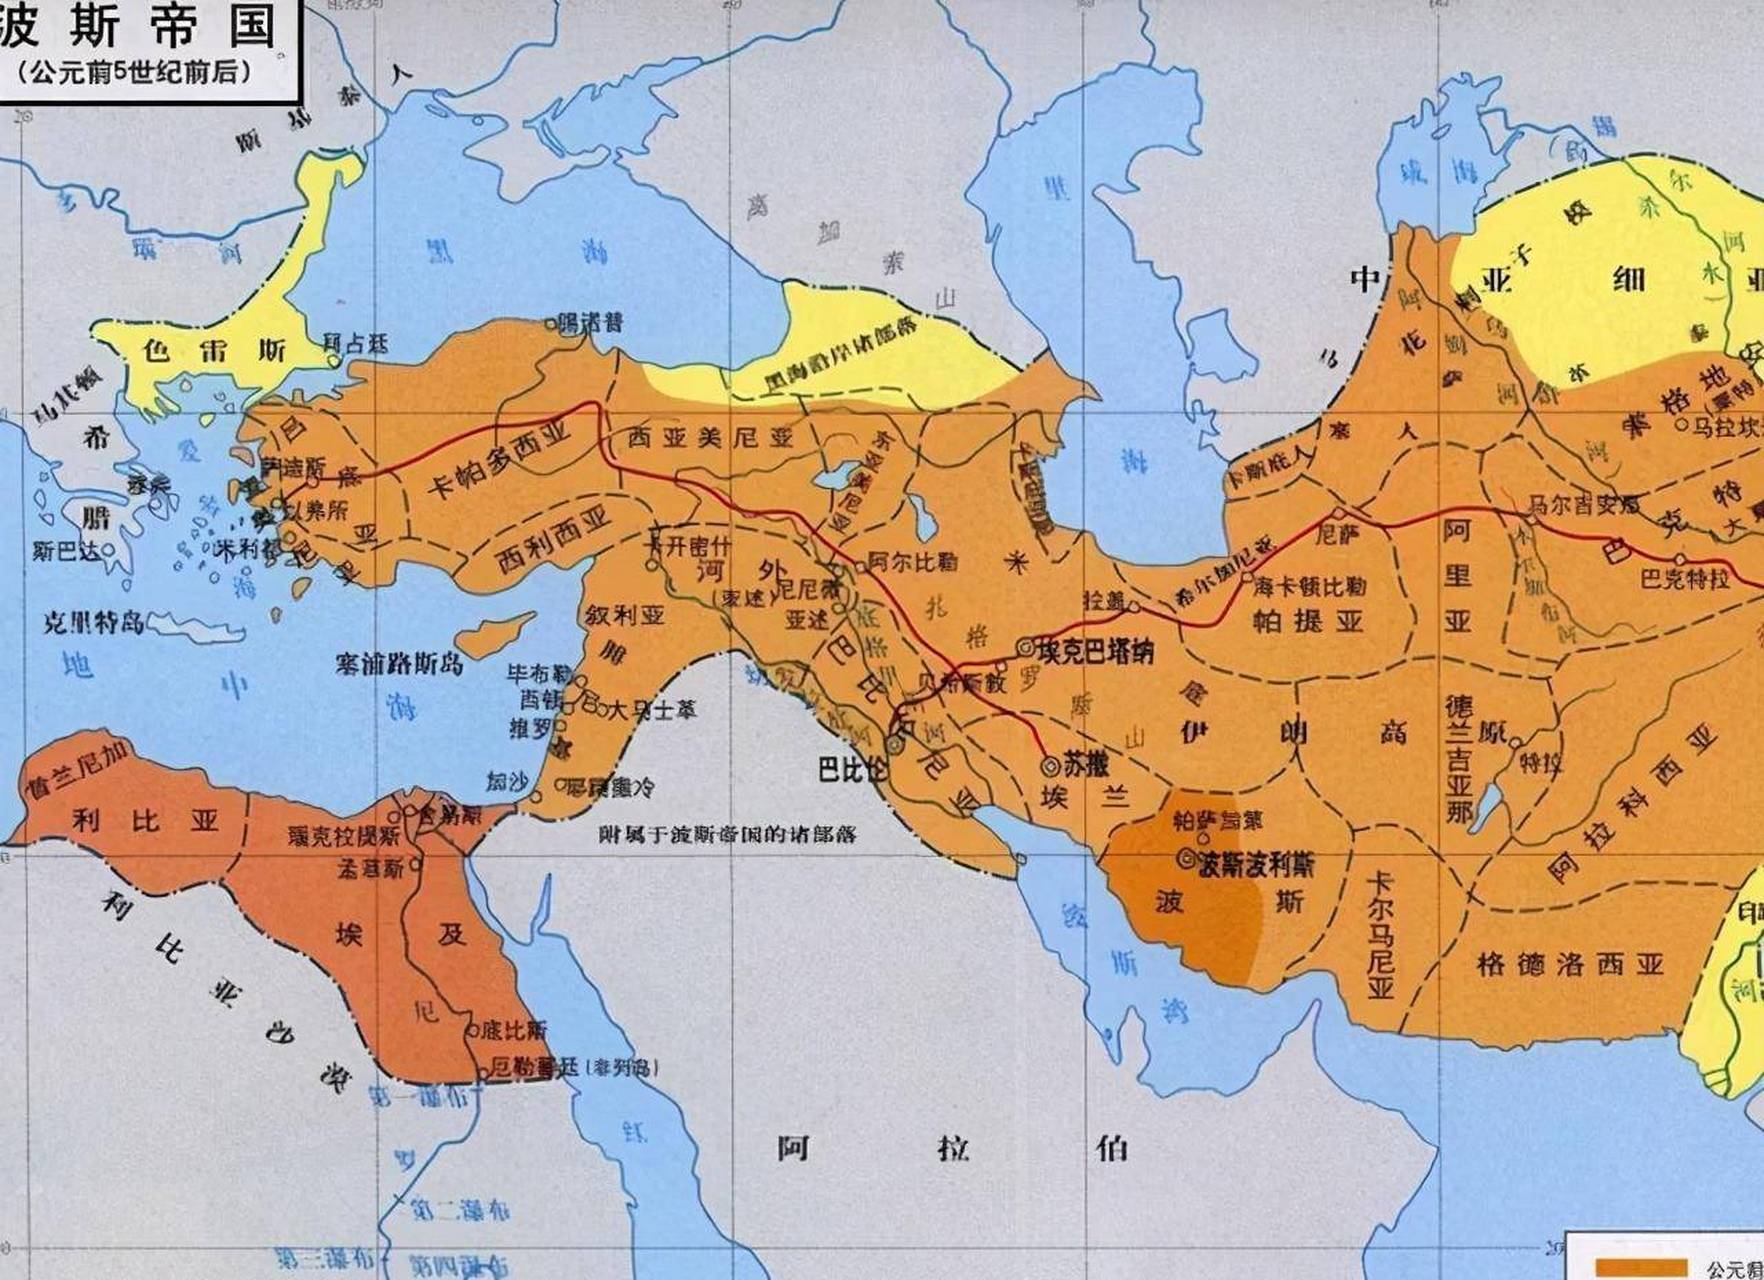 波斯帝国的建立 公元前六世纪,人从位于今天伊朗南部的家园迅速扩张